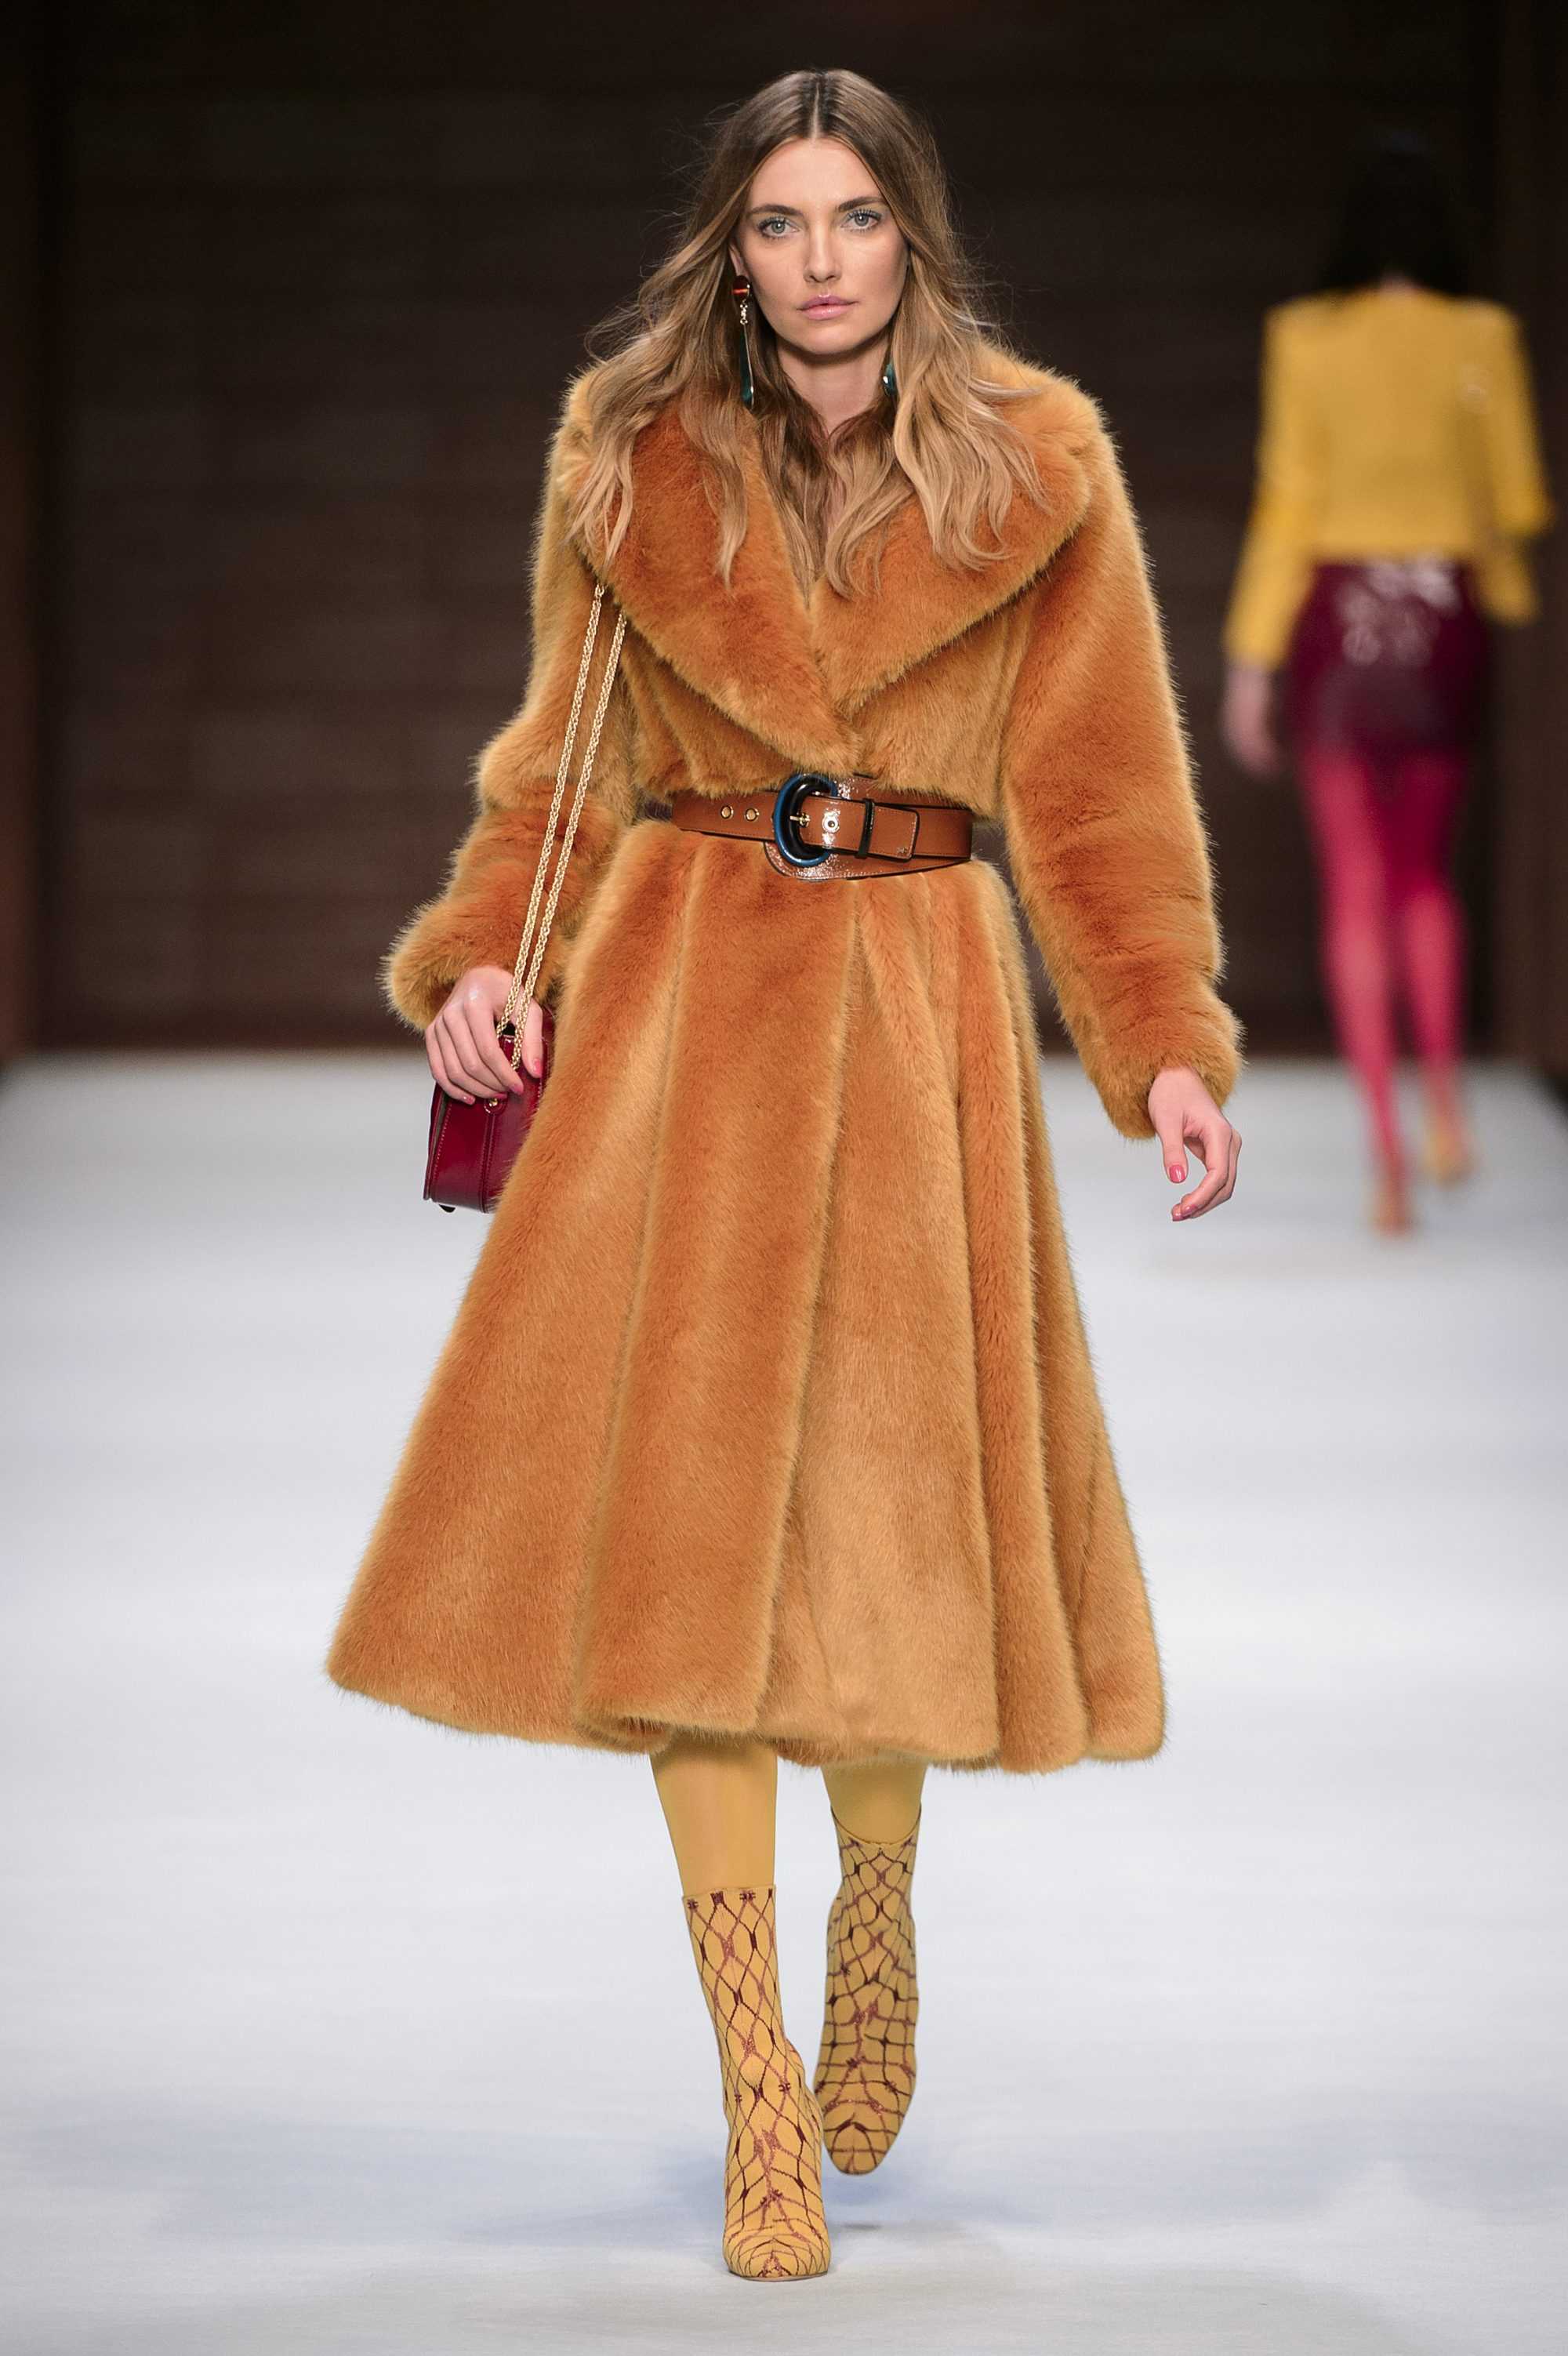 Модные пальто, шубы и куртки осень-зима 2021-2022